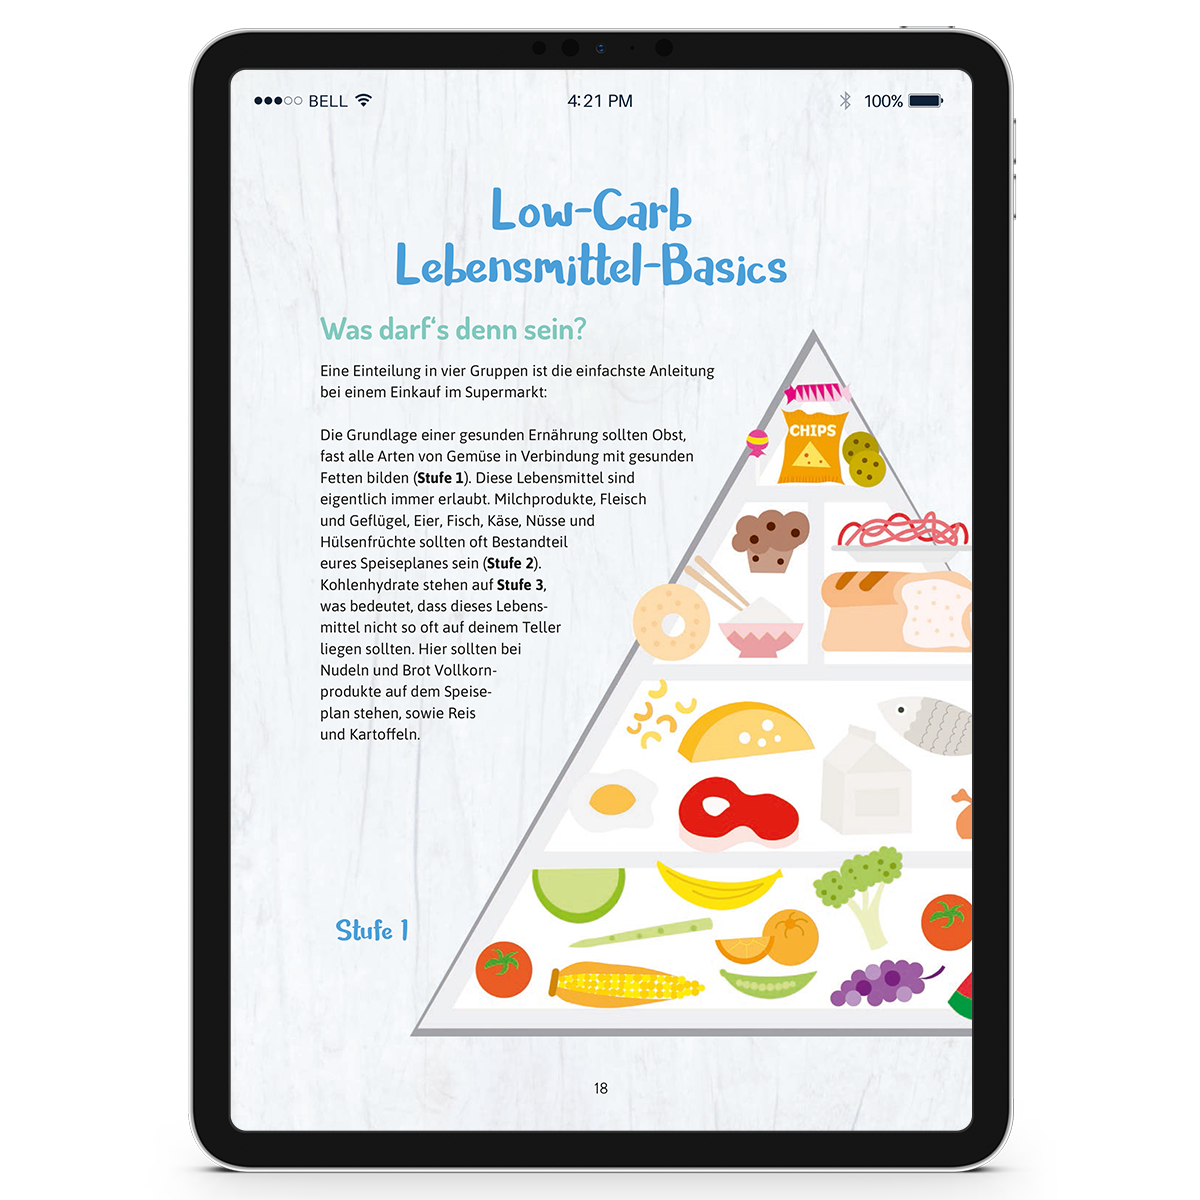 Abnehmen mit Low-Carb (Konzeptbuch mit Ernährungsplan als Ebook)